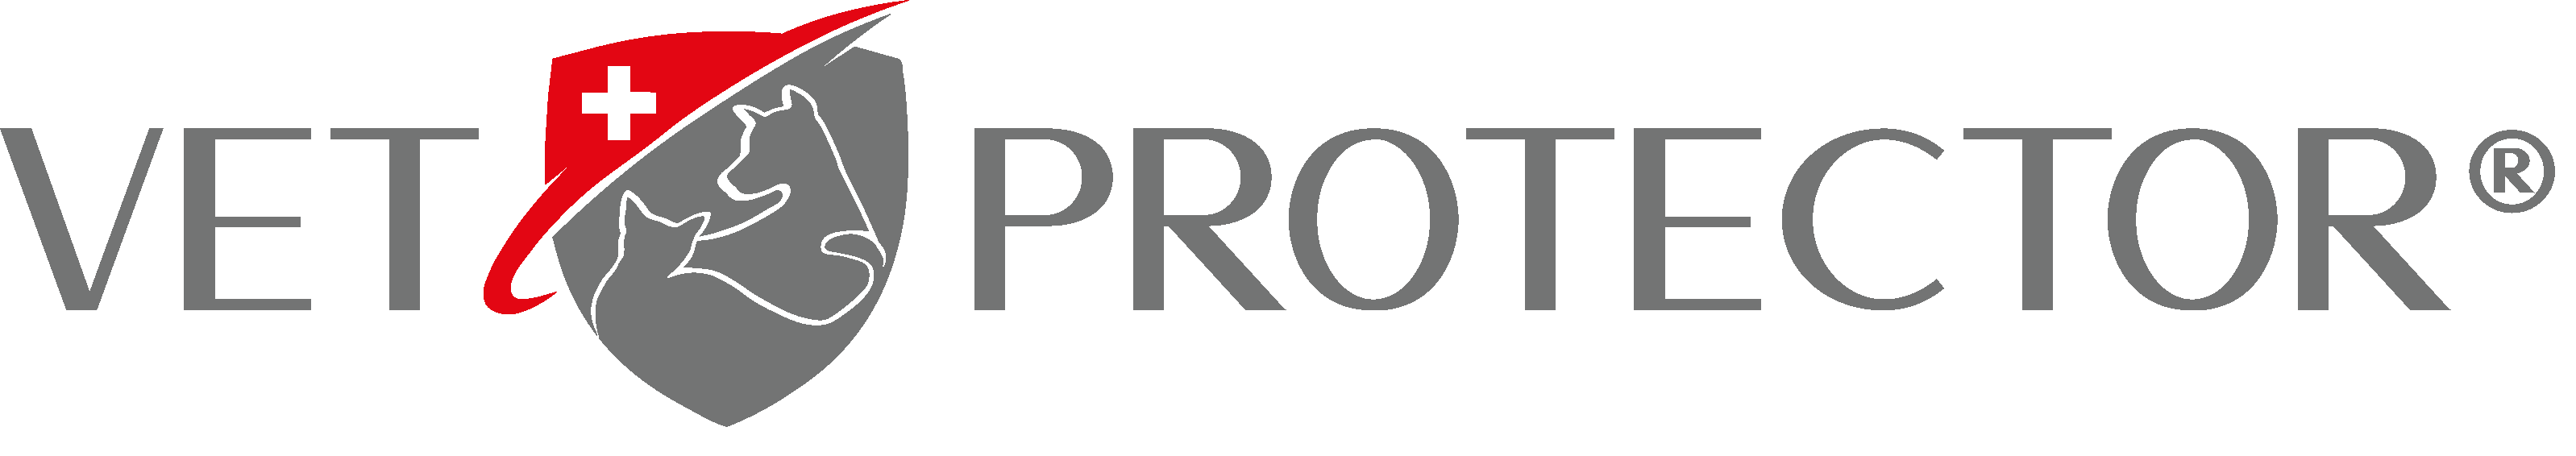 VET PROTECTOR - Logo